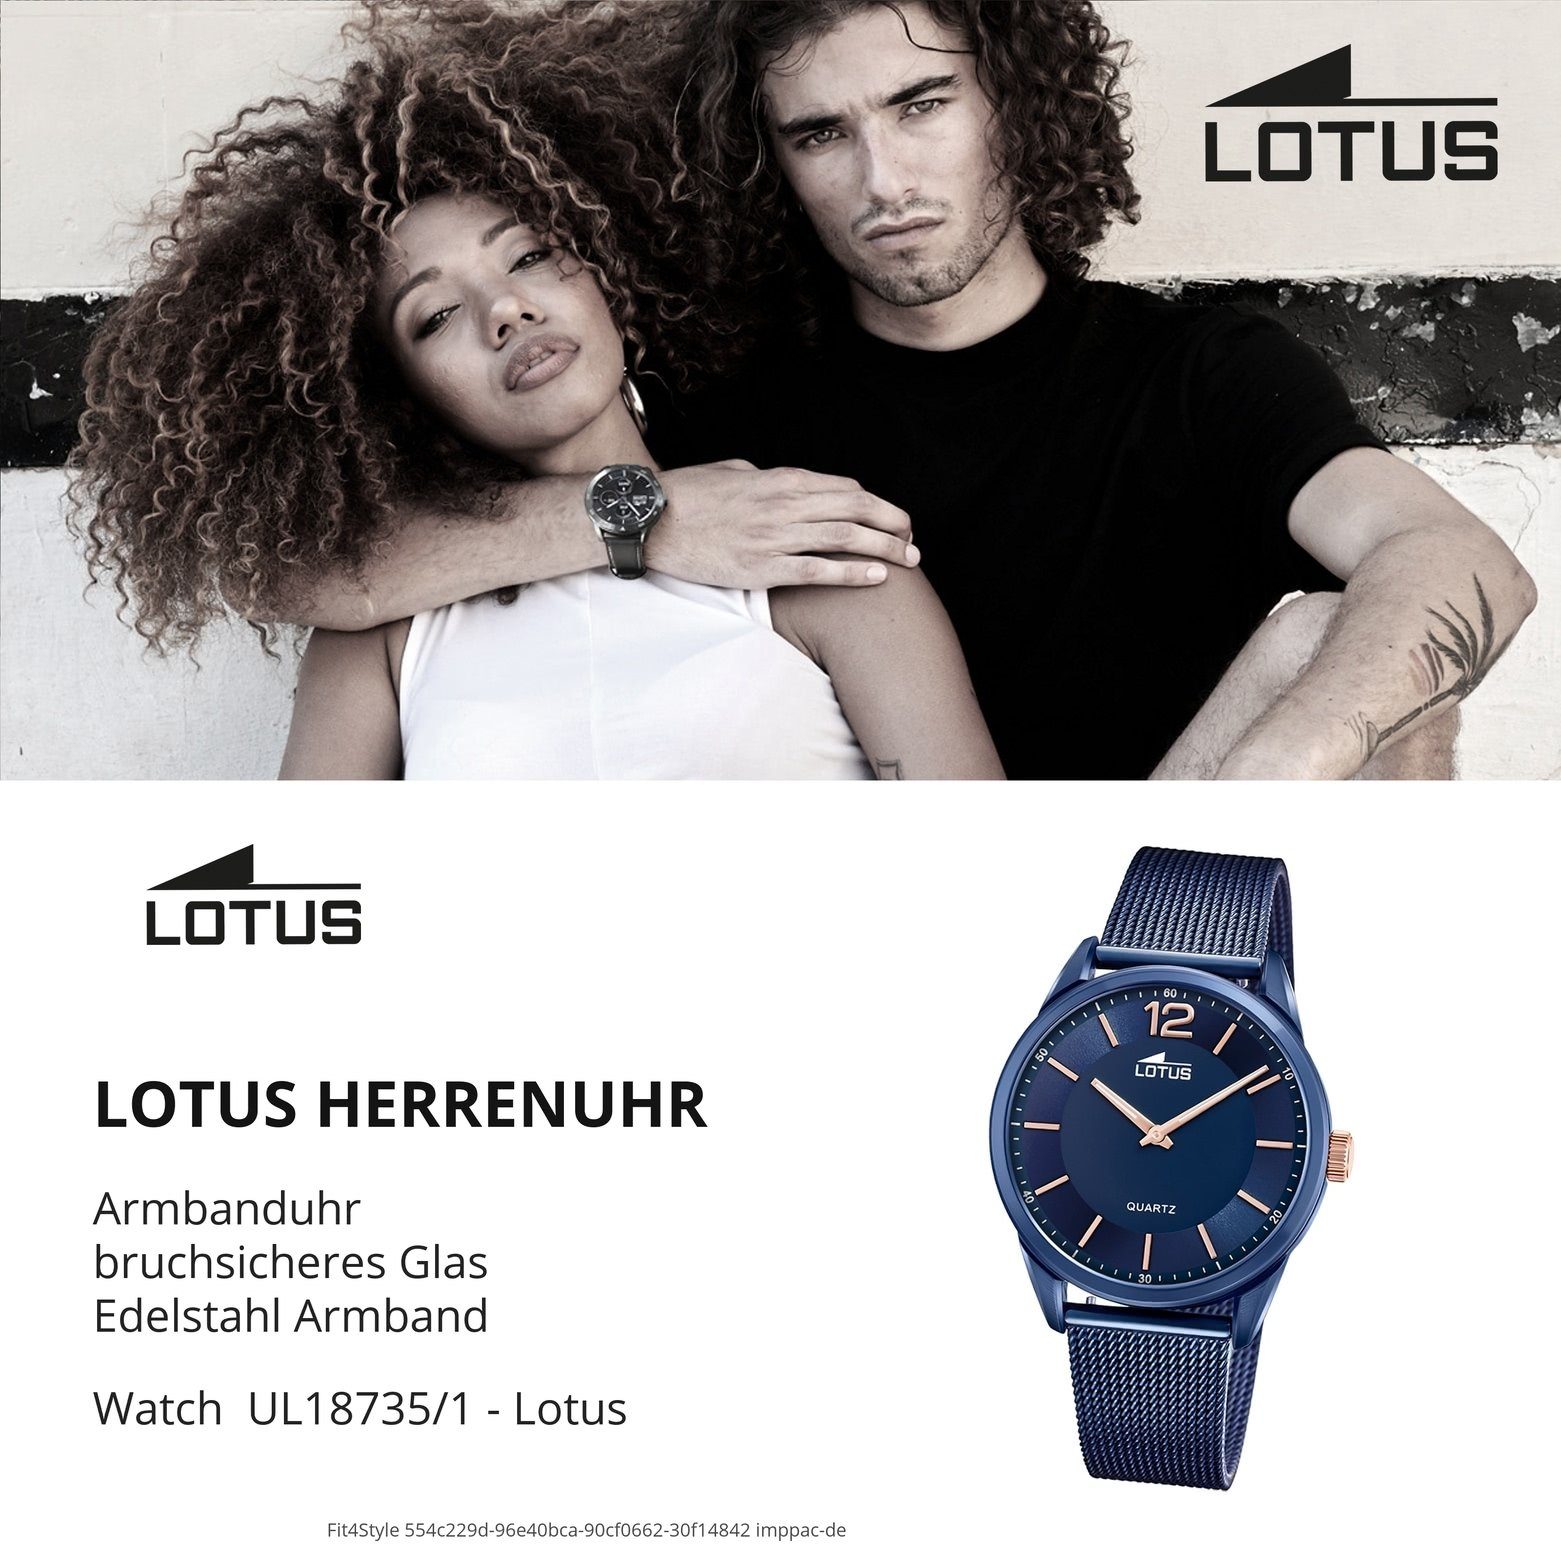 rund, Casual, Armbanduhr Smart Lotus 40mm) Edelstahlarmband Quarzuhr Lotus (ca. Herrenuhr groß Herren blau